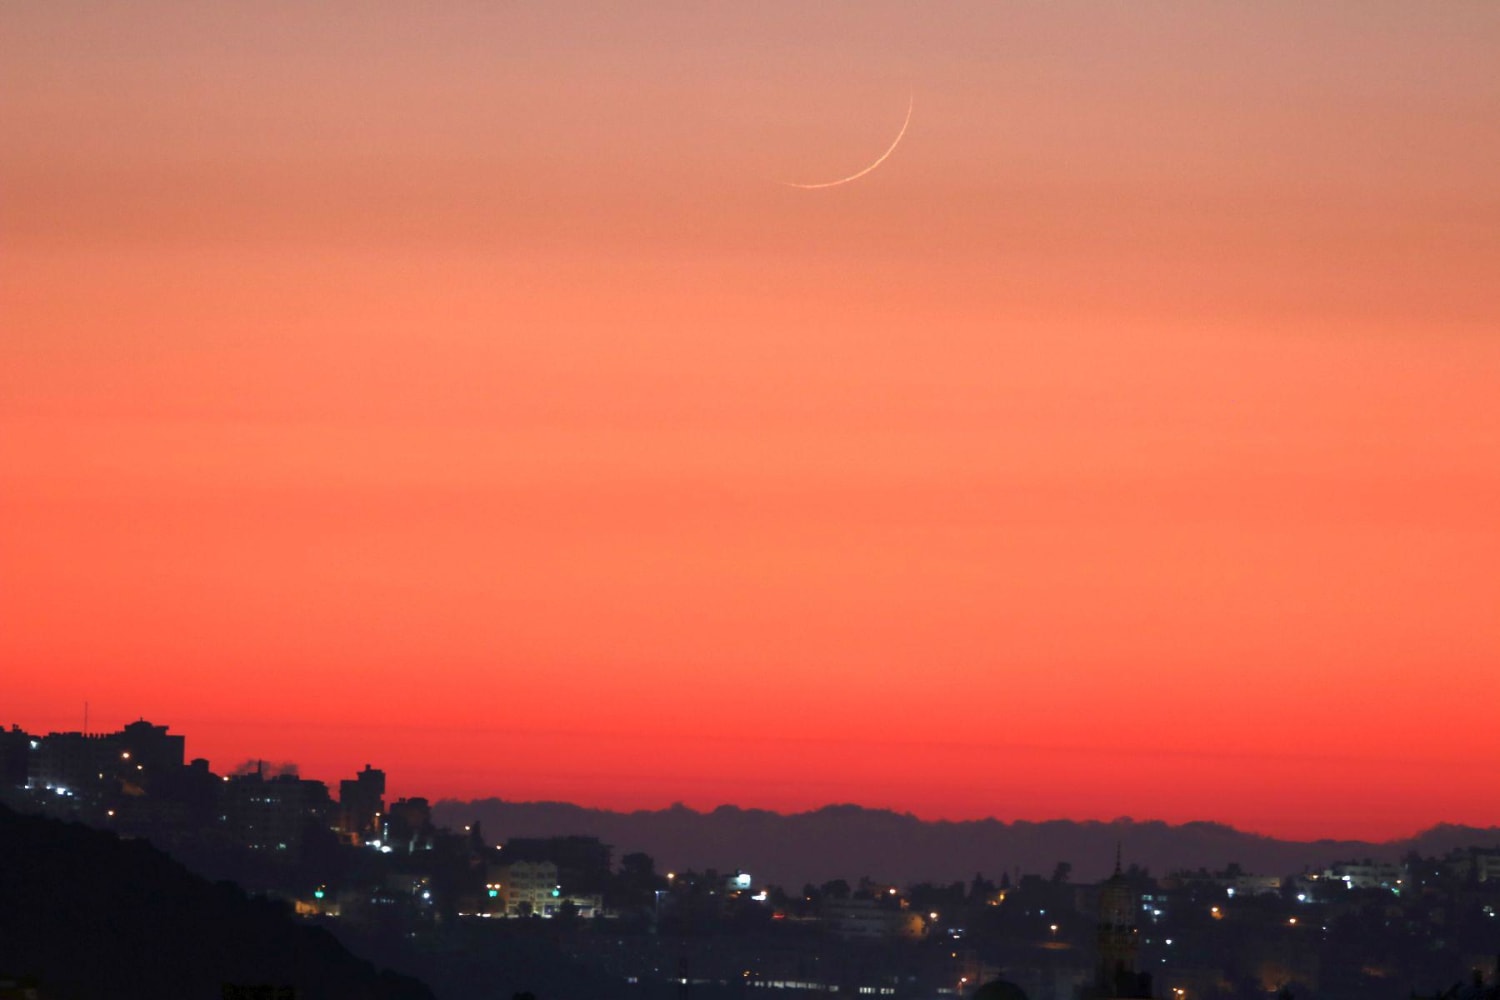 The new moon setting in the reddisn dusk sky